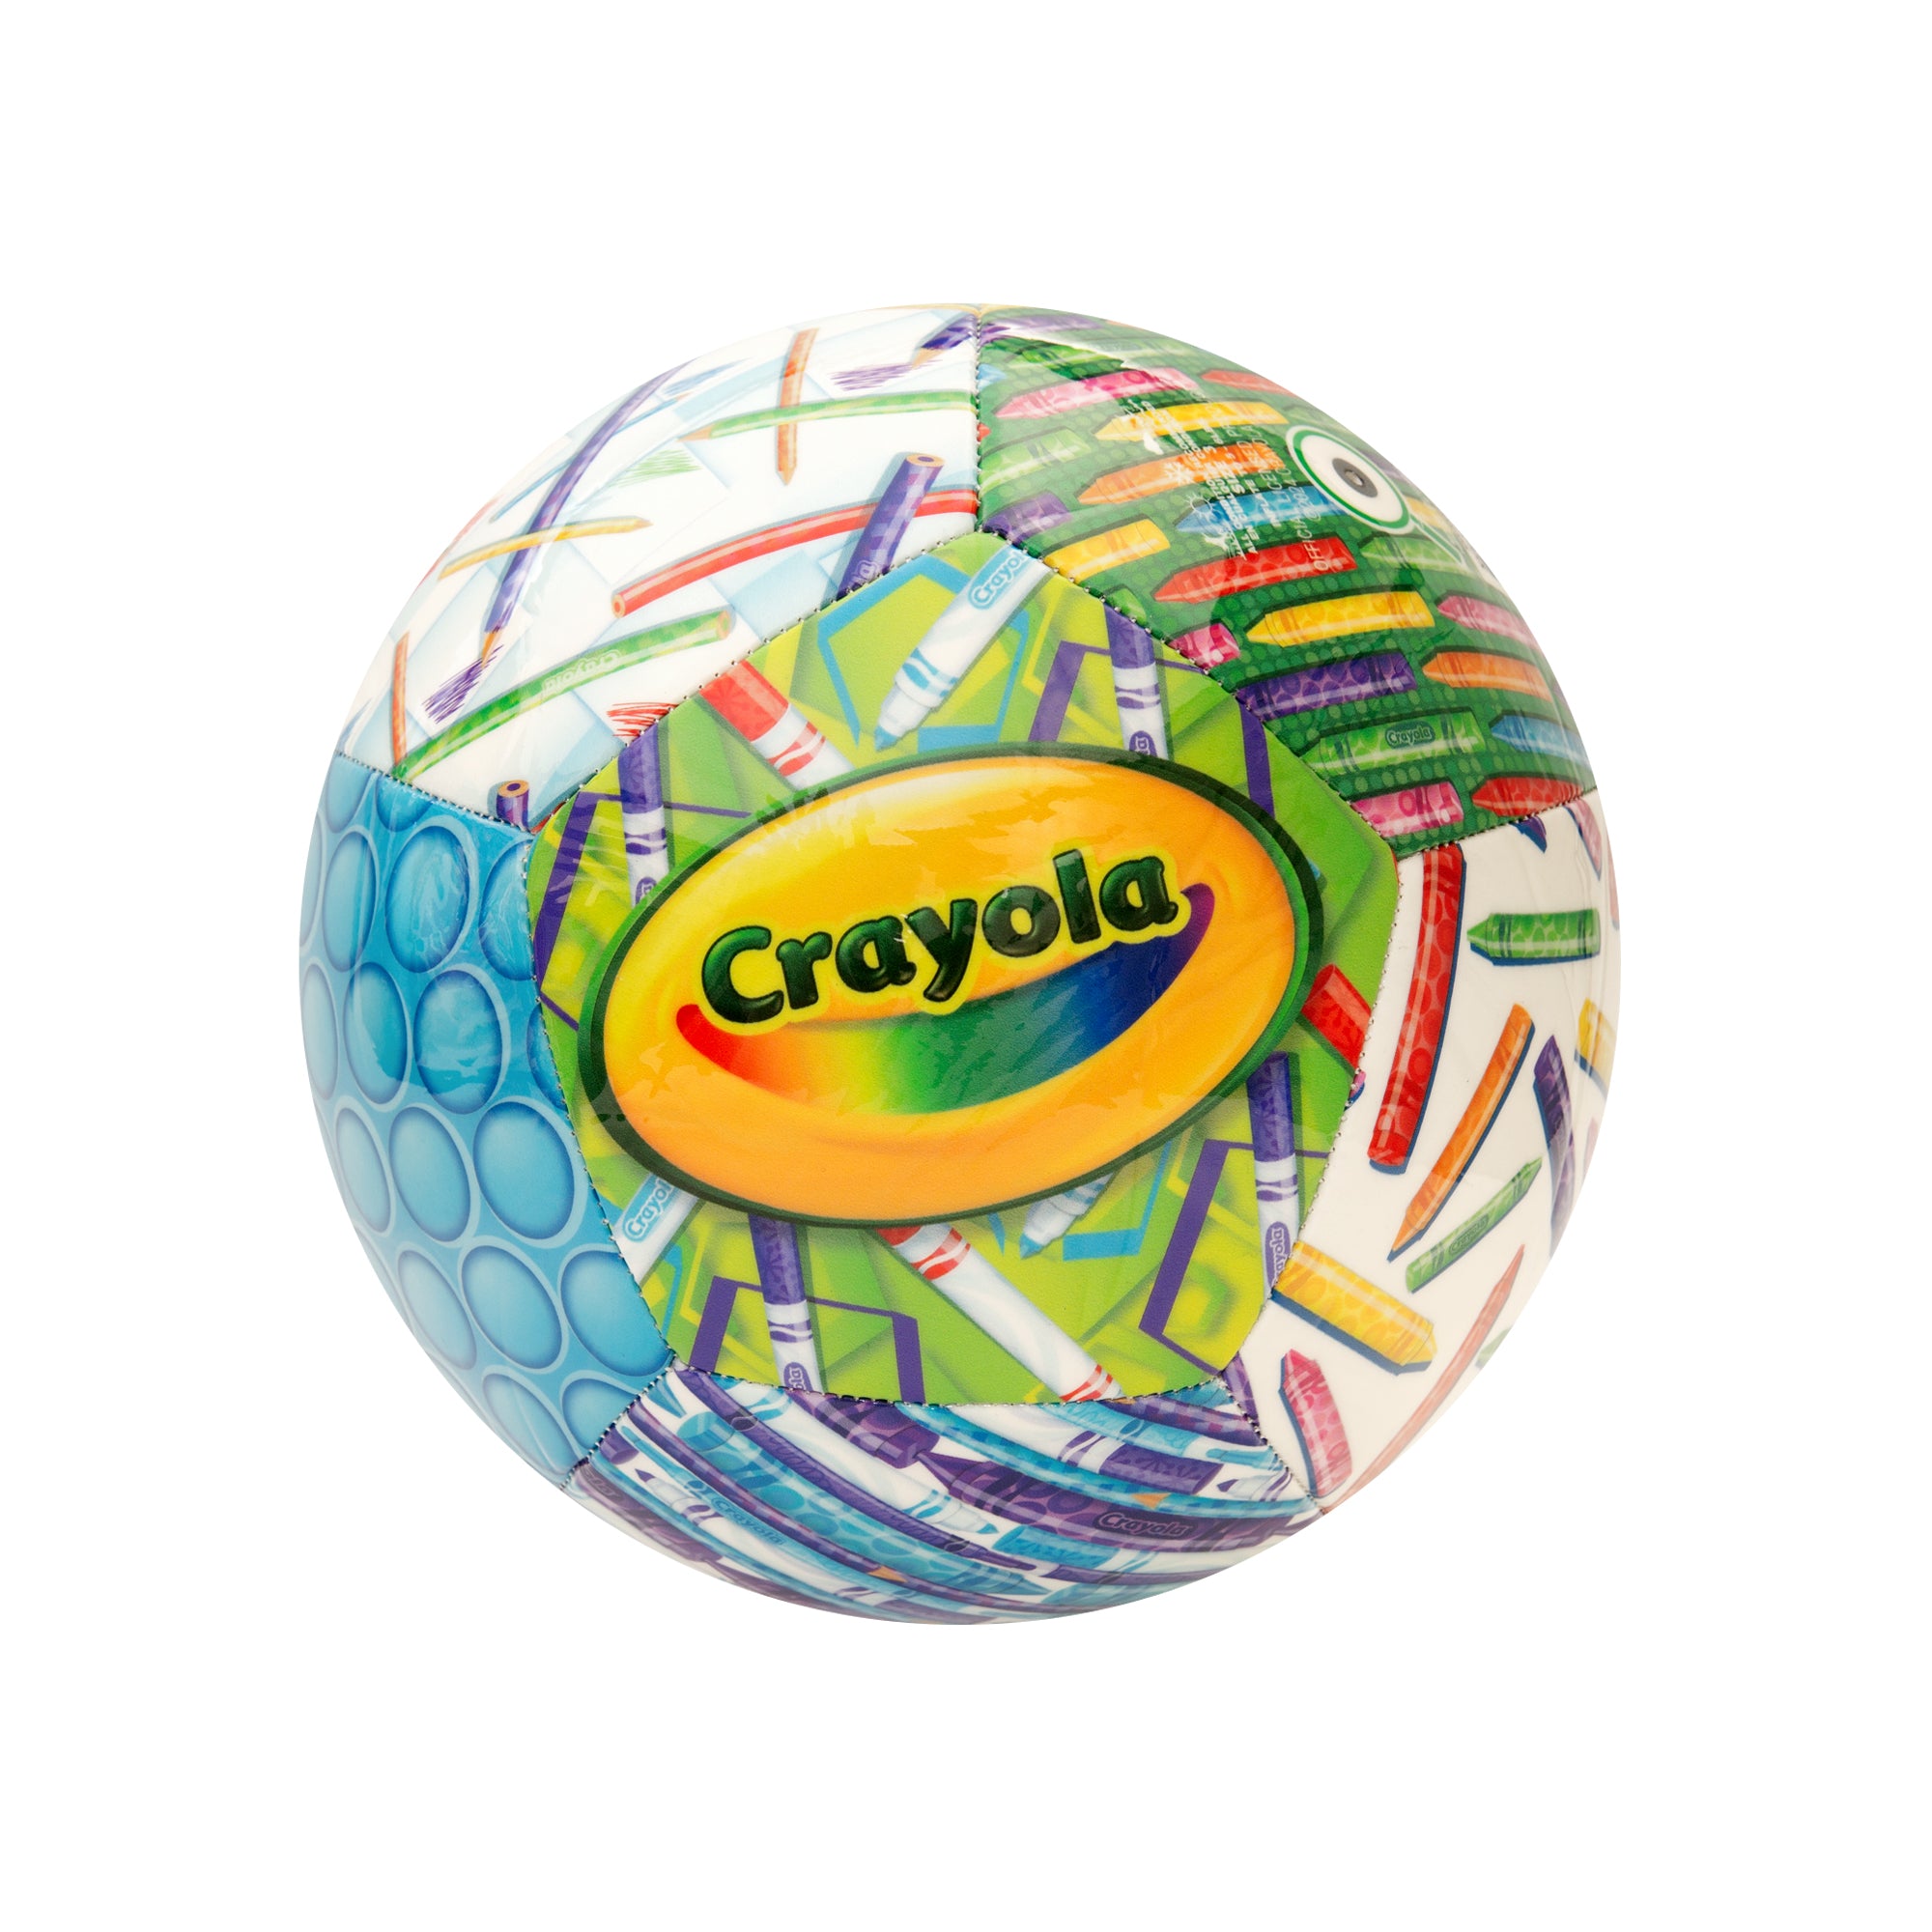 Crayola Color Set Soccer Ball